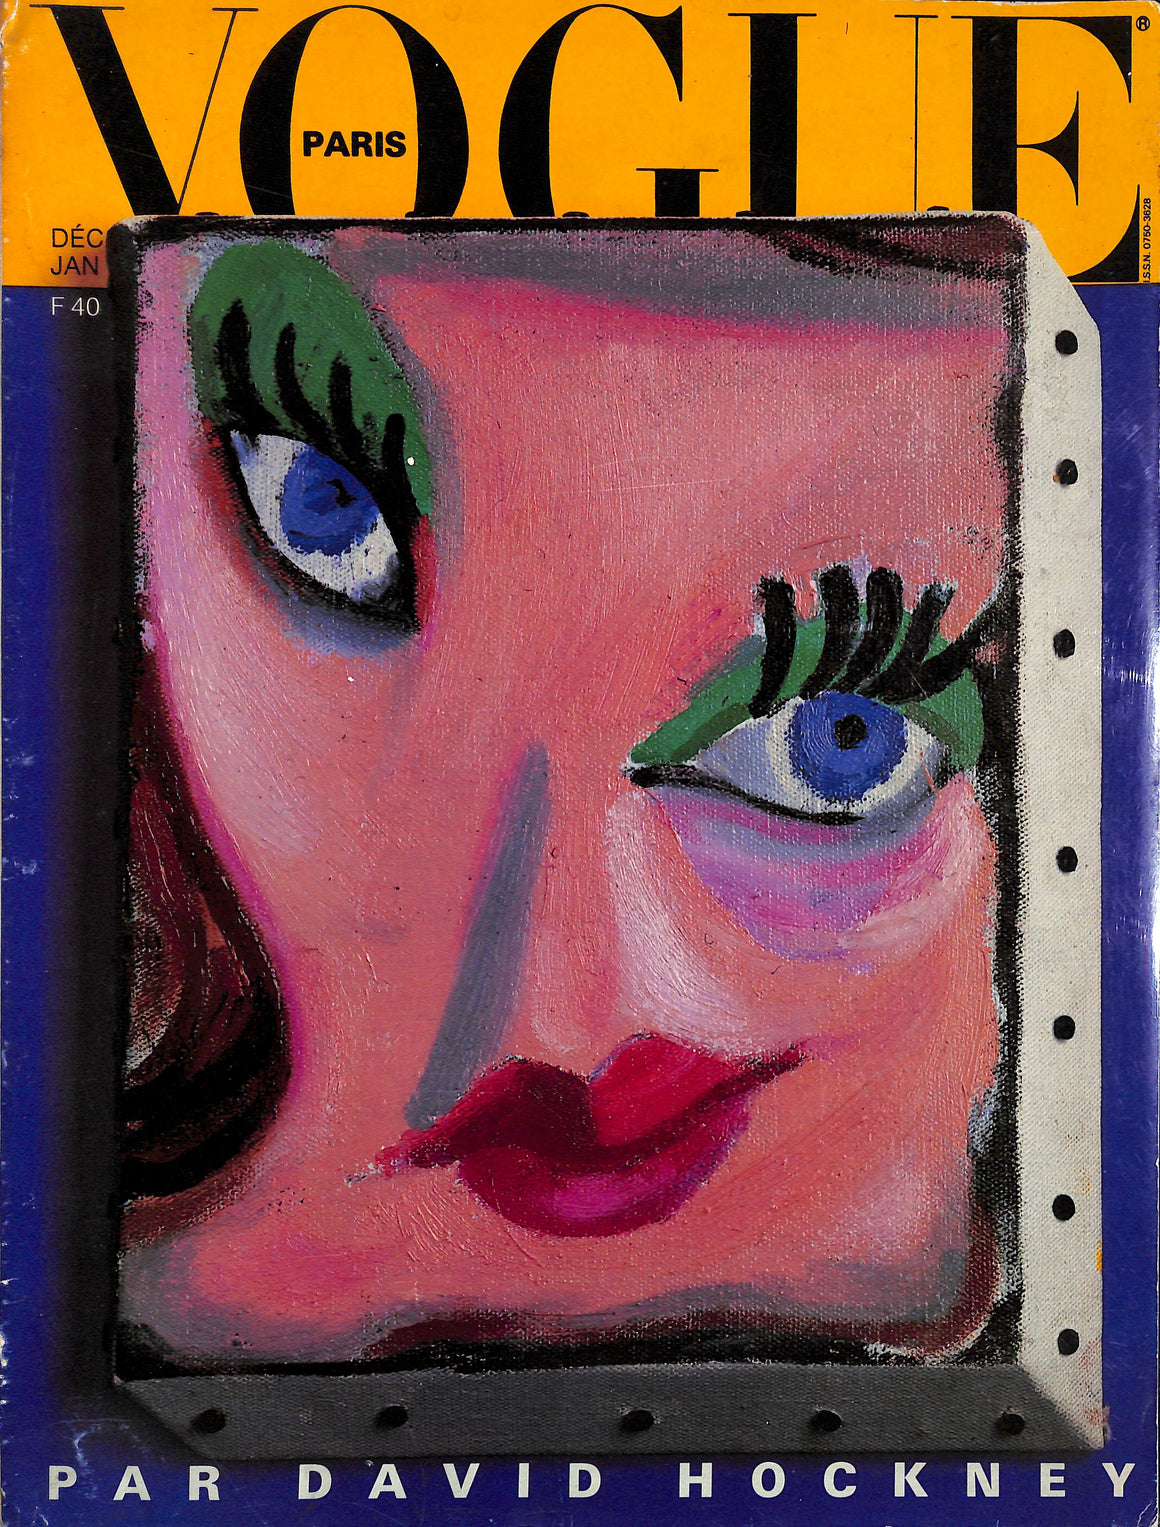 "Paris Vogue No. 662" Decembre 1985/ Janvier 1986 [David Hockney Special Issue]